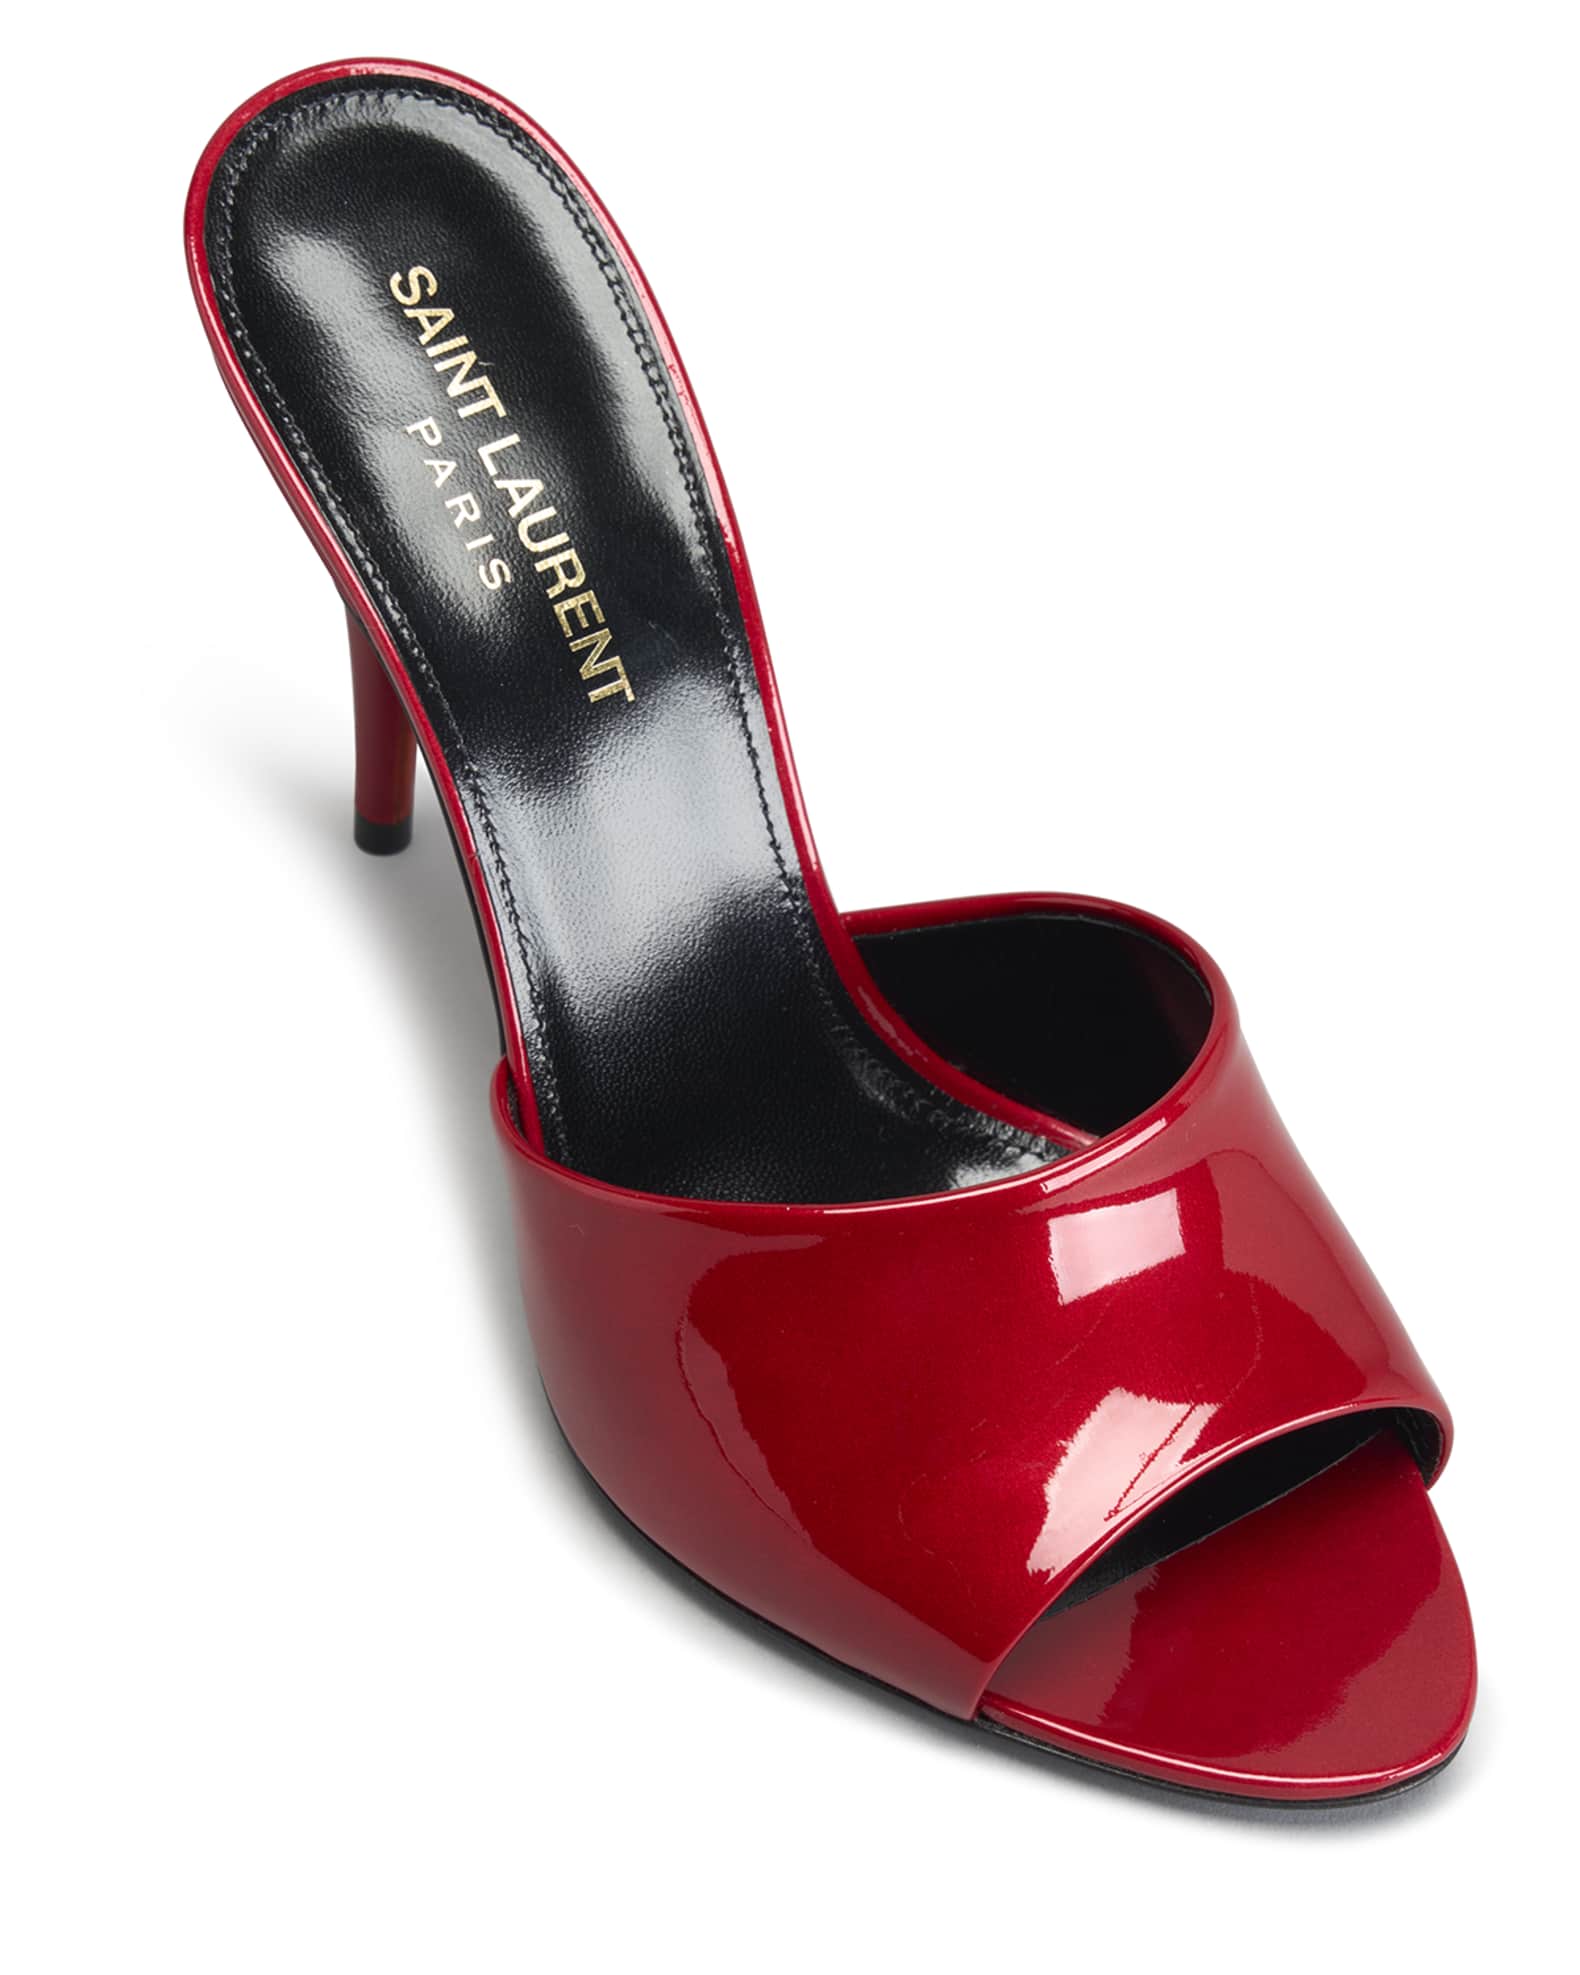 Saint Laurent La Patent Stiletto Mule Sandals | Neiman Marcus